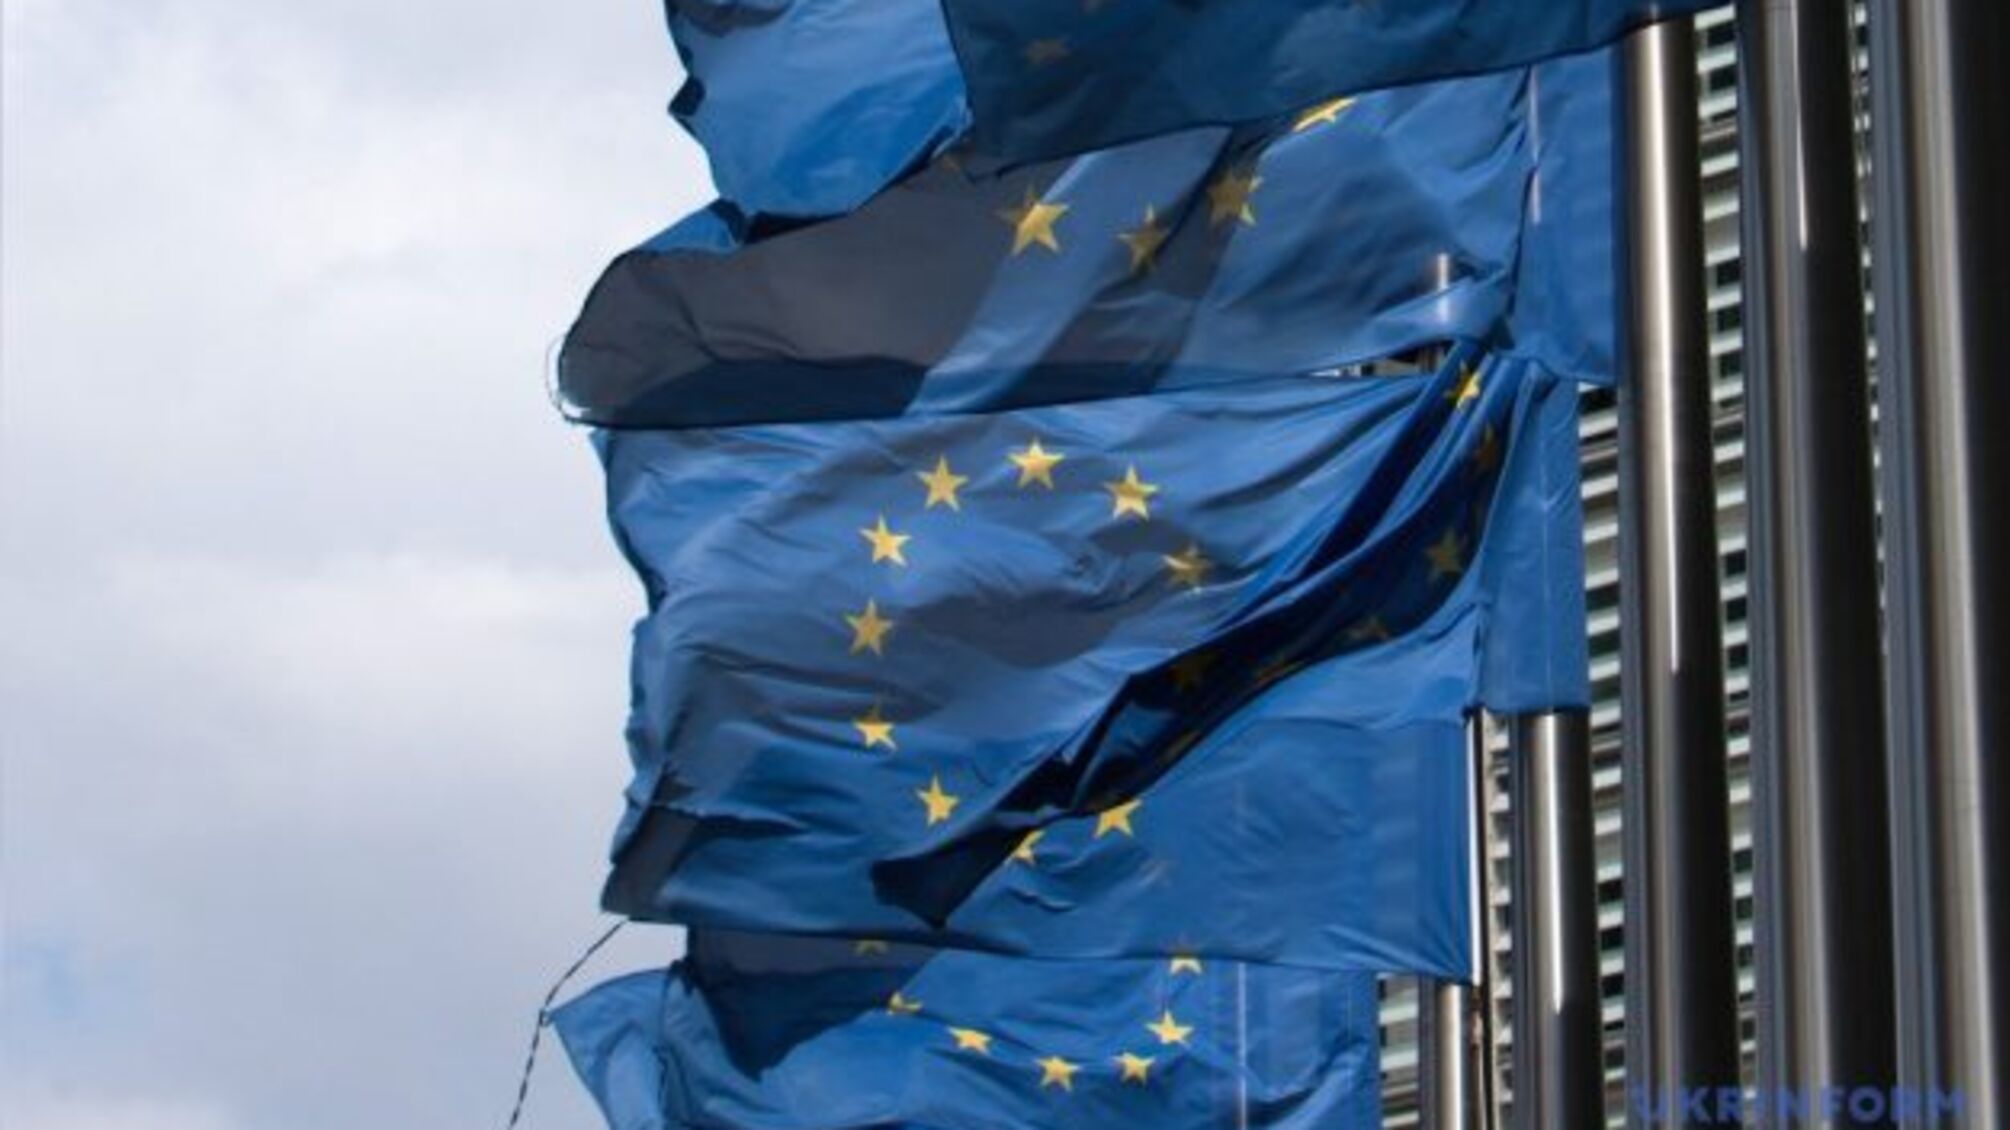 Членство у ЄС передбачає дотримання європейських цінностей - дипломат